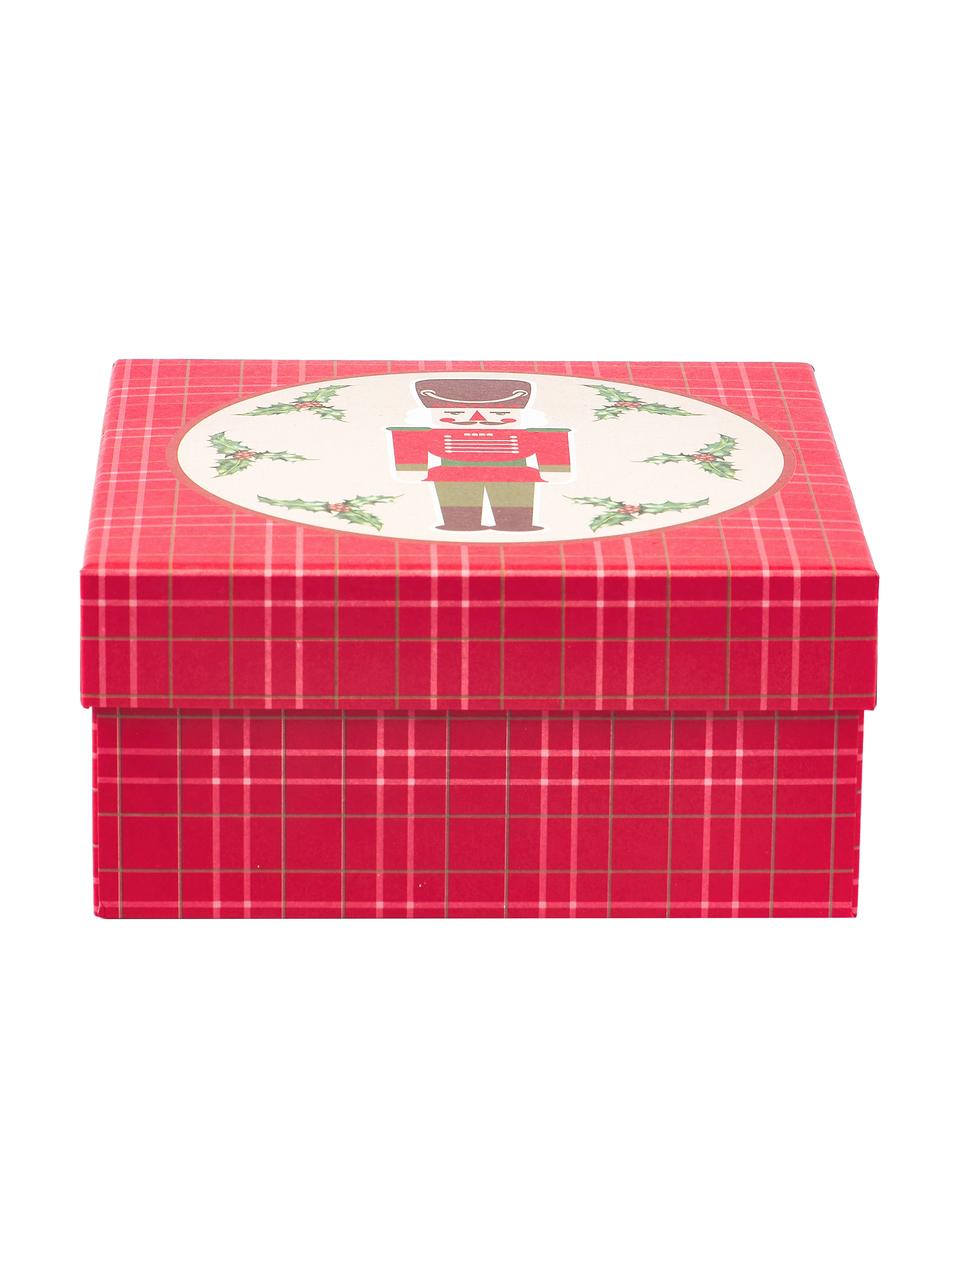 Súprava darčekových krabičiek Nussknacker, 3 diely, Papier, Červená, zelená, béžová, Súprava s rôznymi veľkosťami